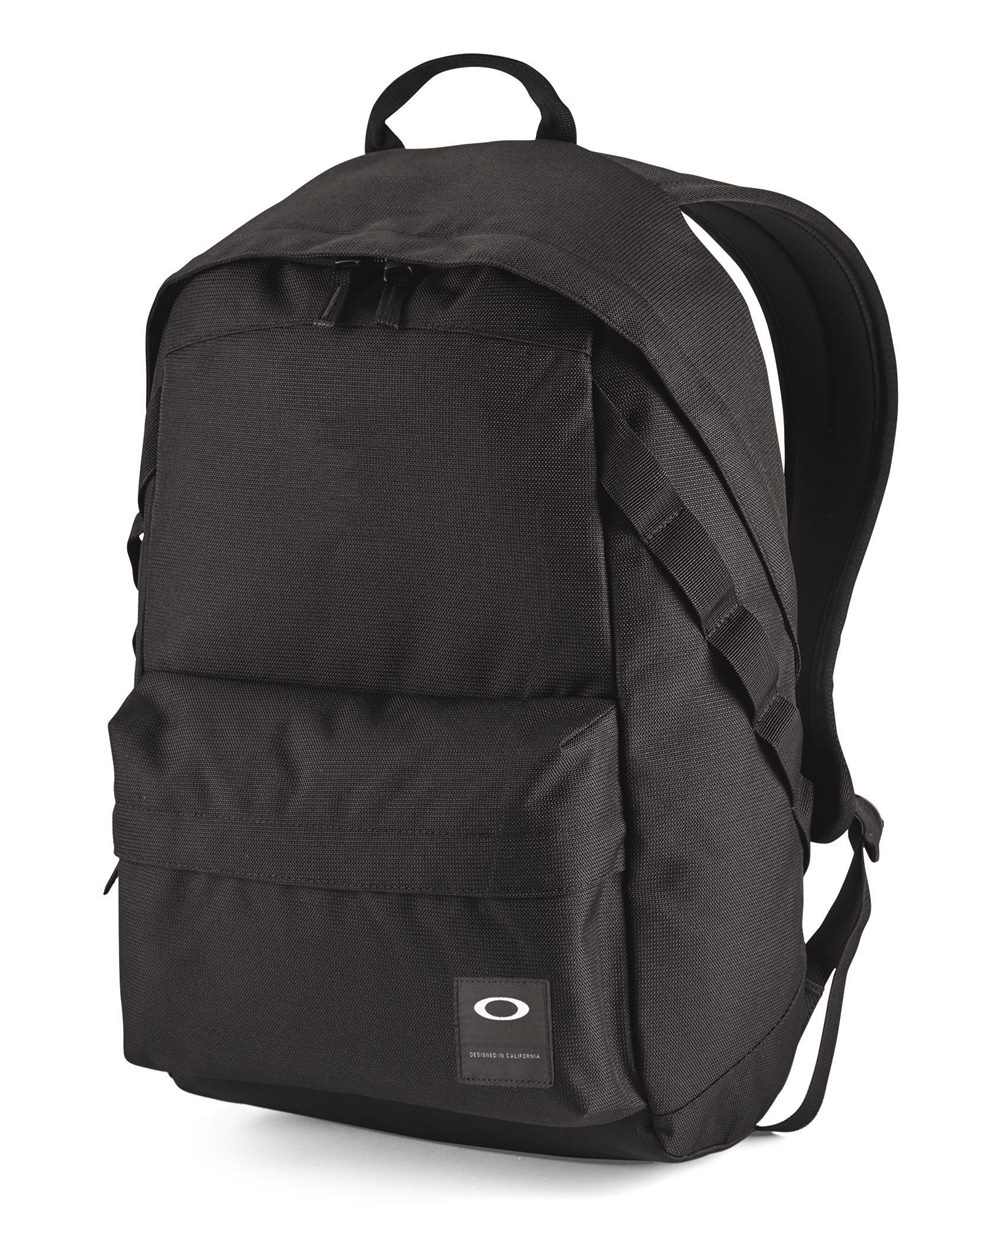 Oakley 921013ODM - 20L Holbrook Backpack